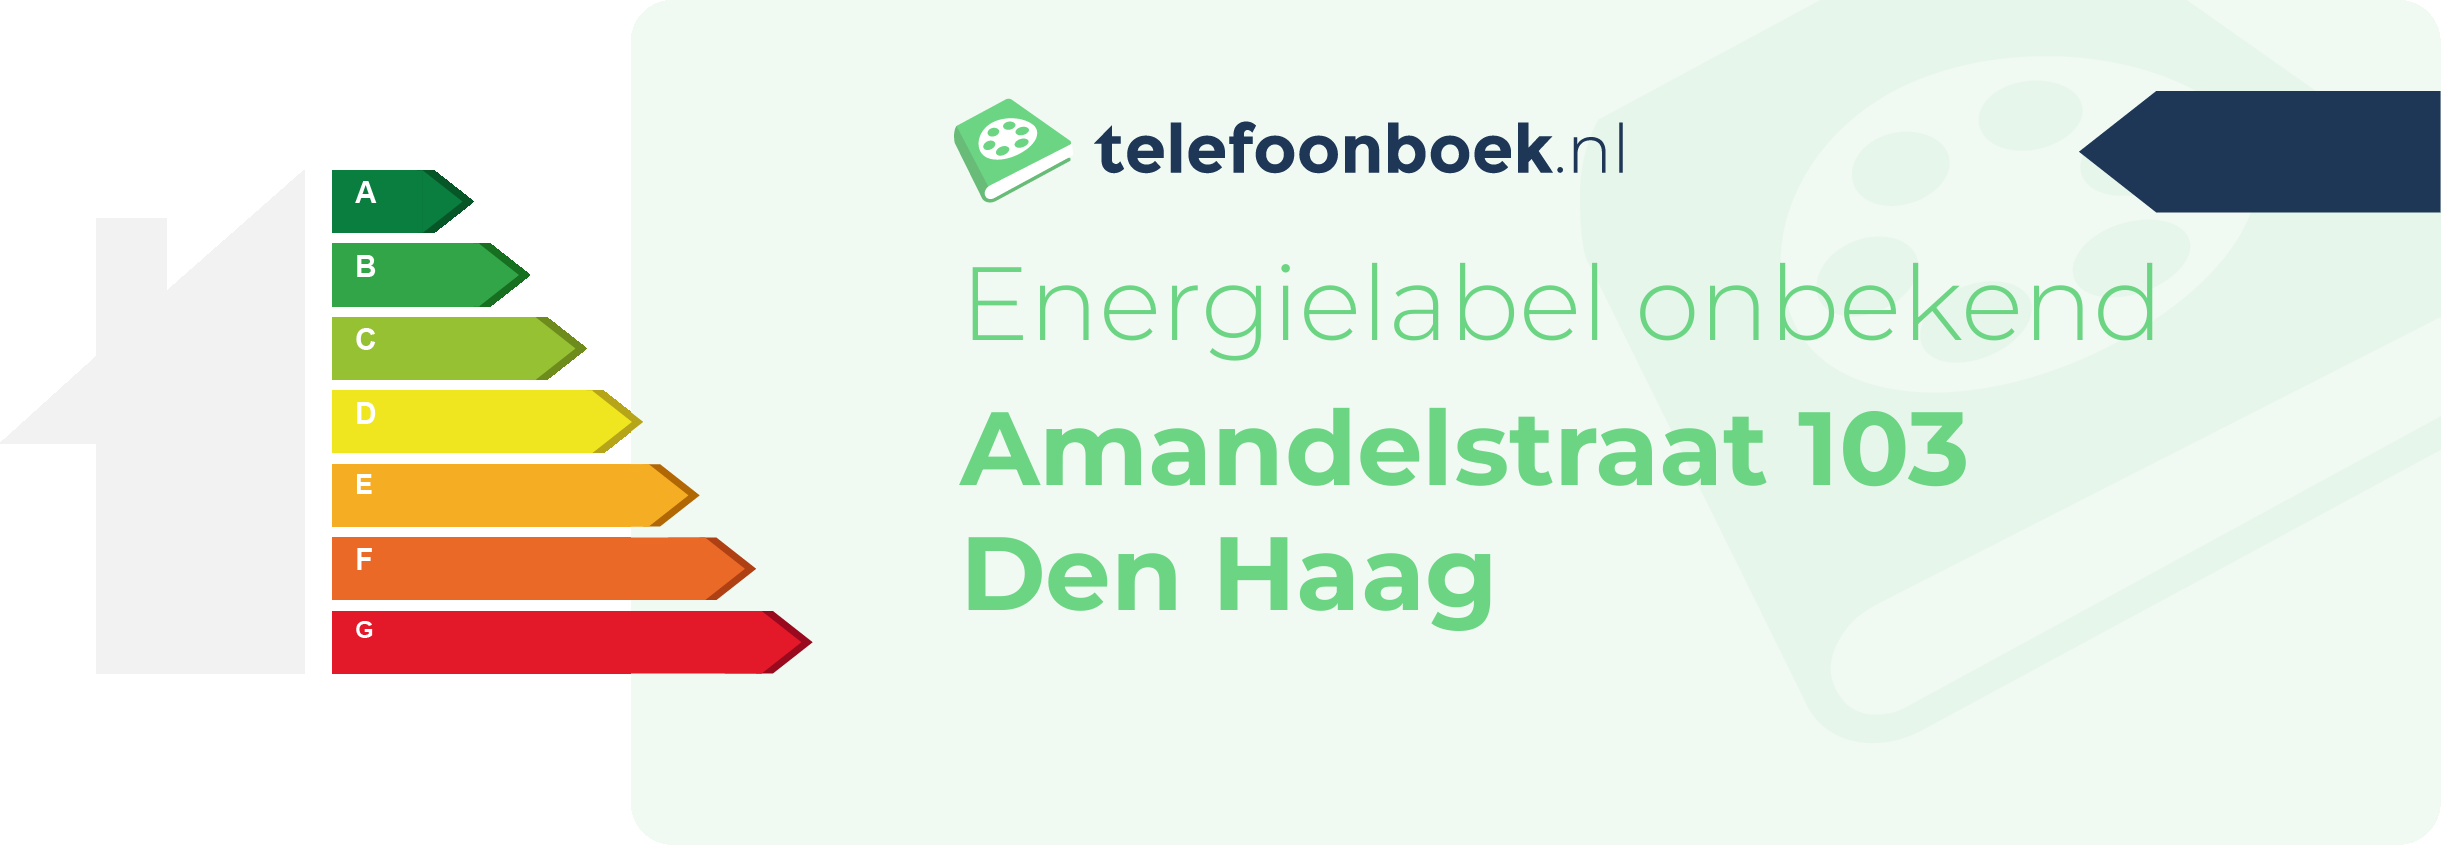 Energielabel Amandelstraat 103 Den Haag